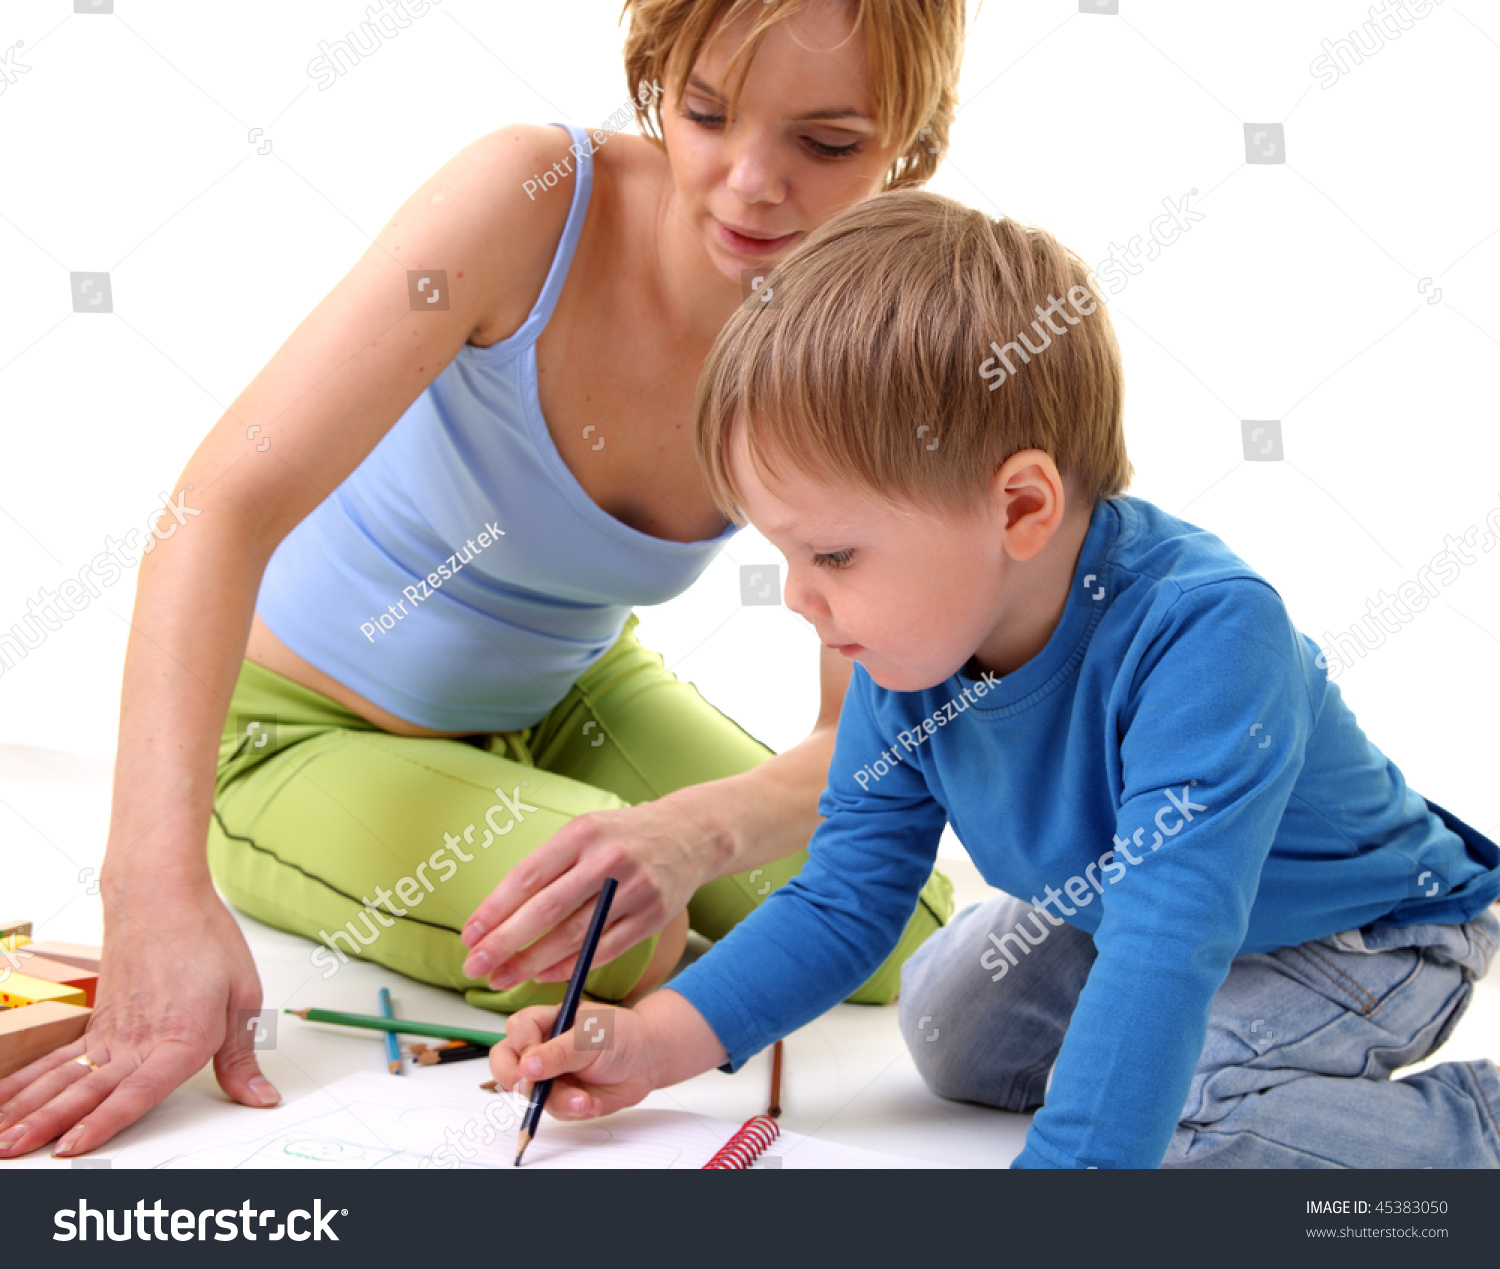 Зрелая мама учит сына. Красивая мама учит сына. Зрелая обучает мальчика. Мать учит ребёнка секксу. Фото как мама учит детей.